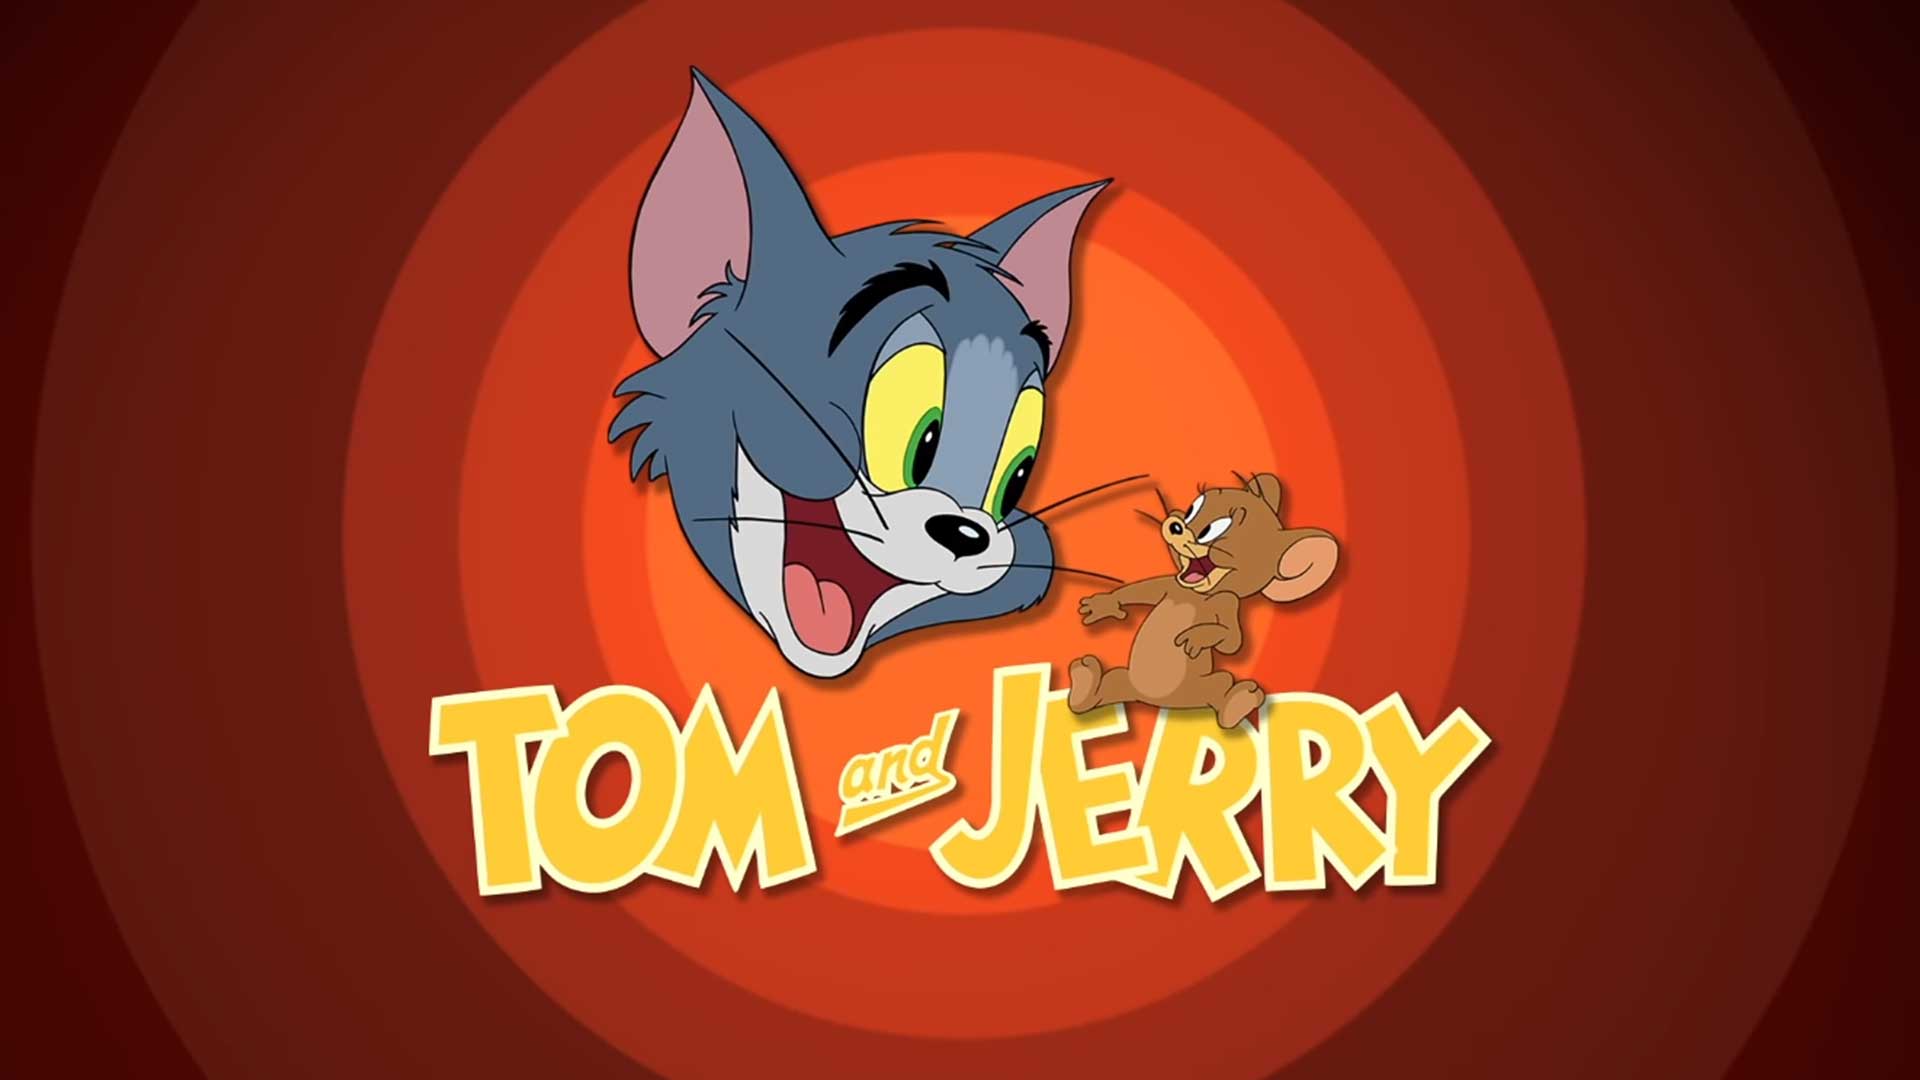 Том и Джерри – 134 серия «Мышиная история жизни» / Tom and Jerry